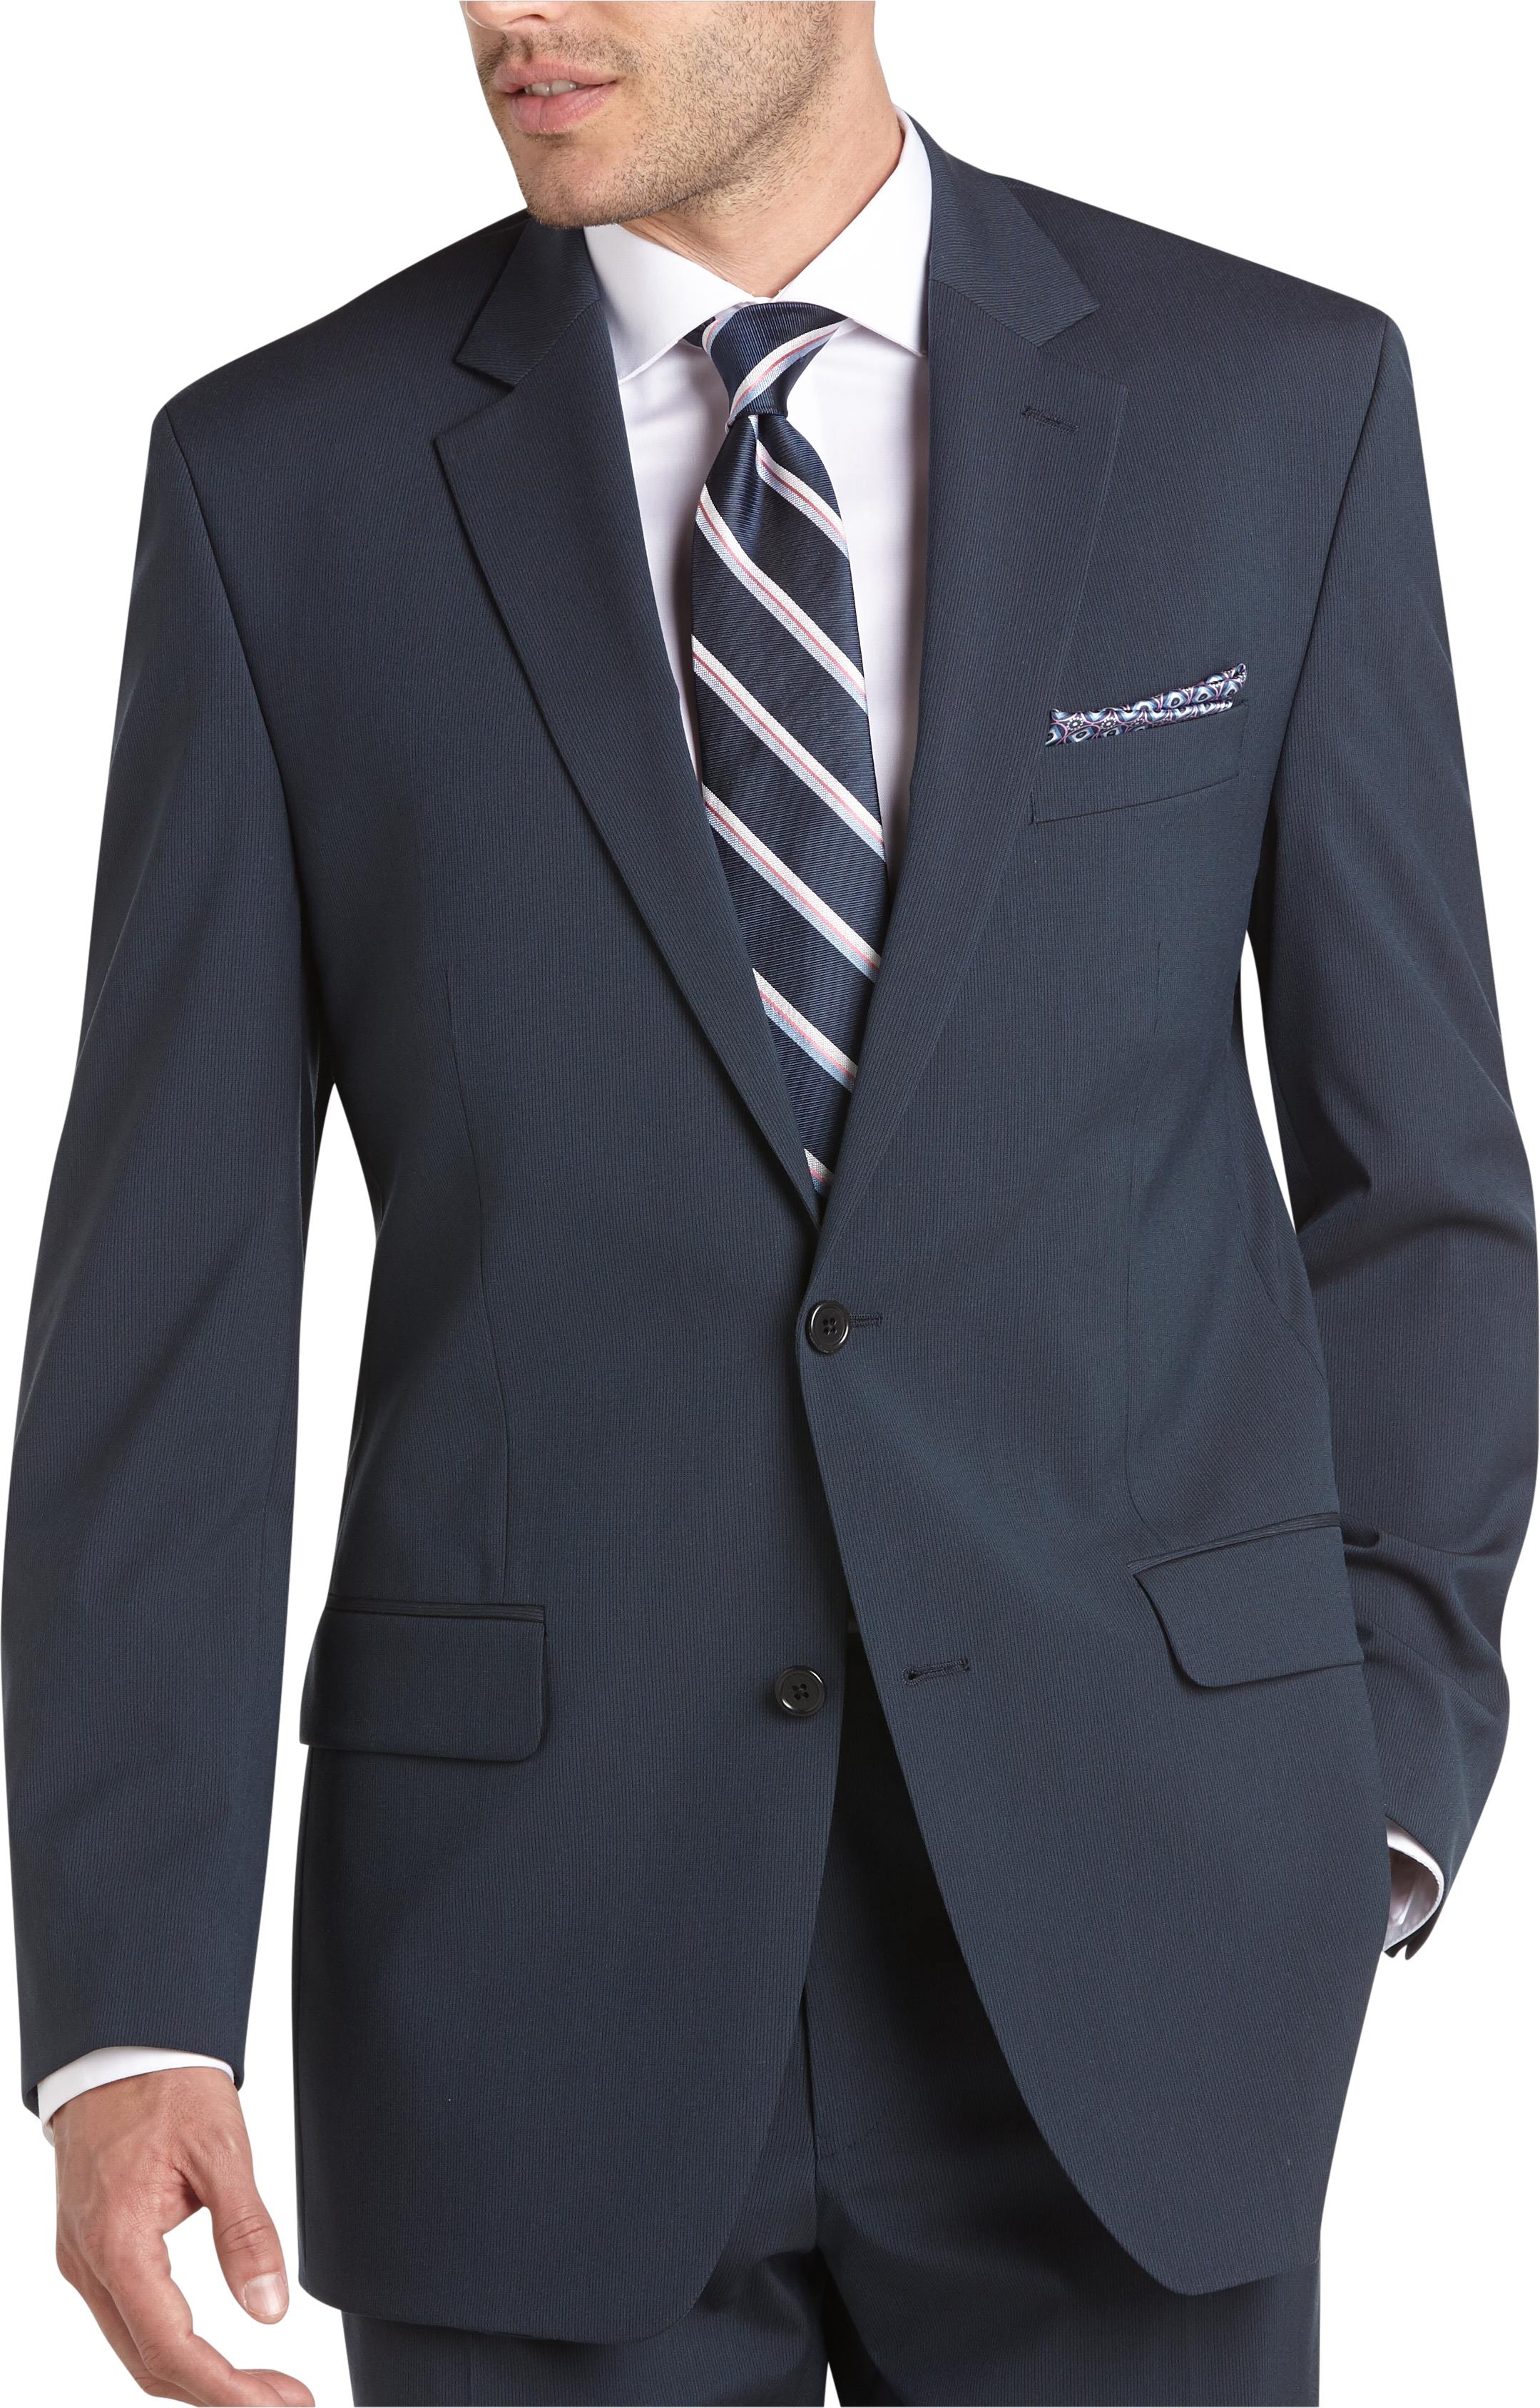 Michael Kors Blue Stripe Slim Fit Suit - Men's Sale | Men's Wearhouse